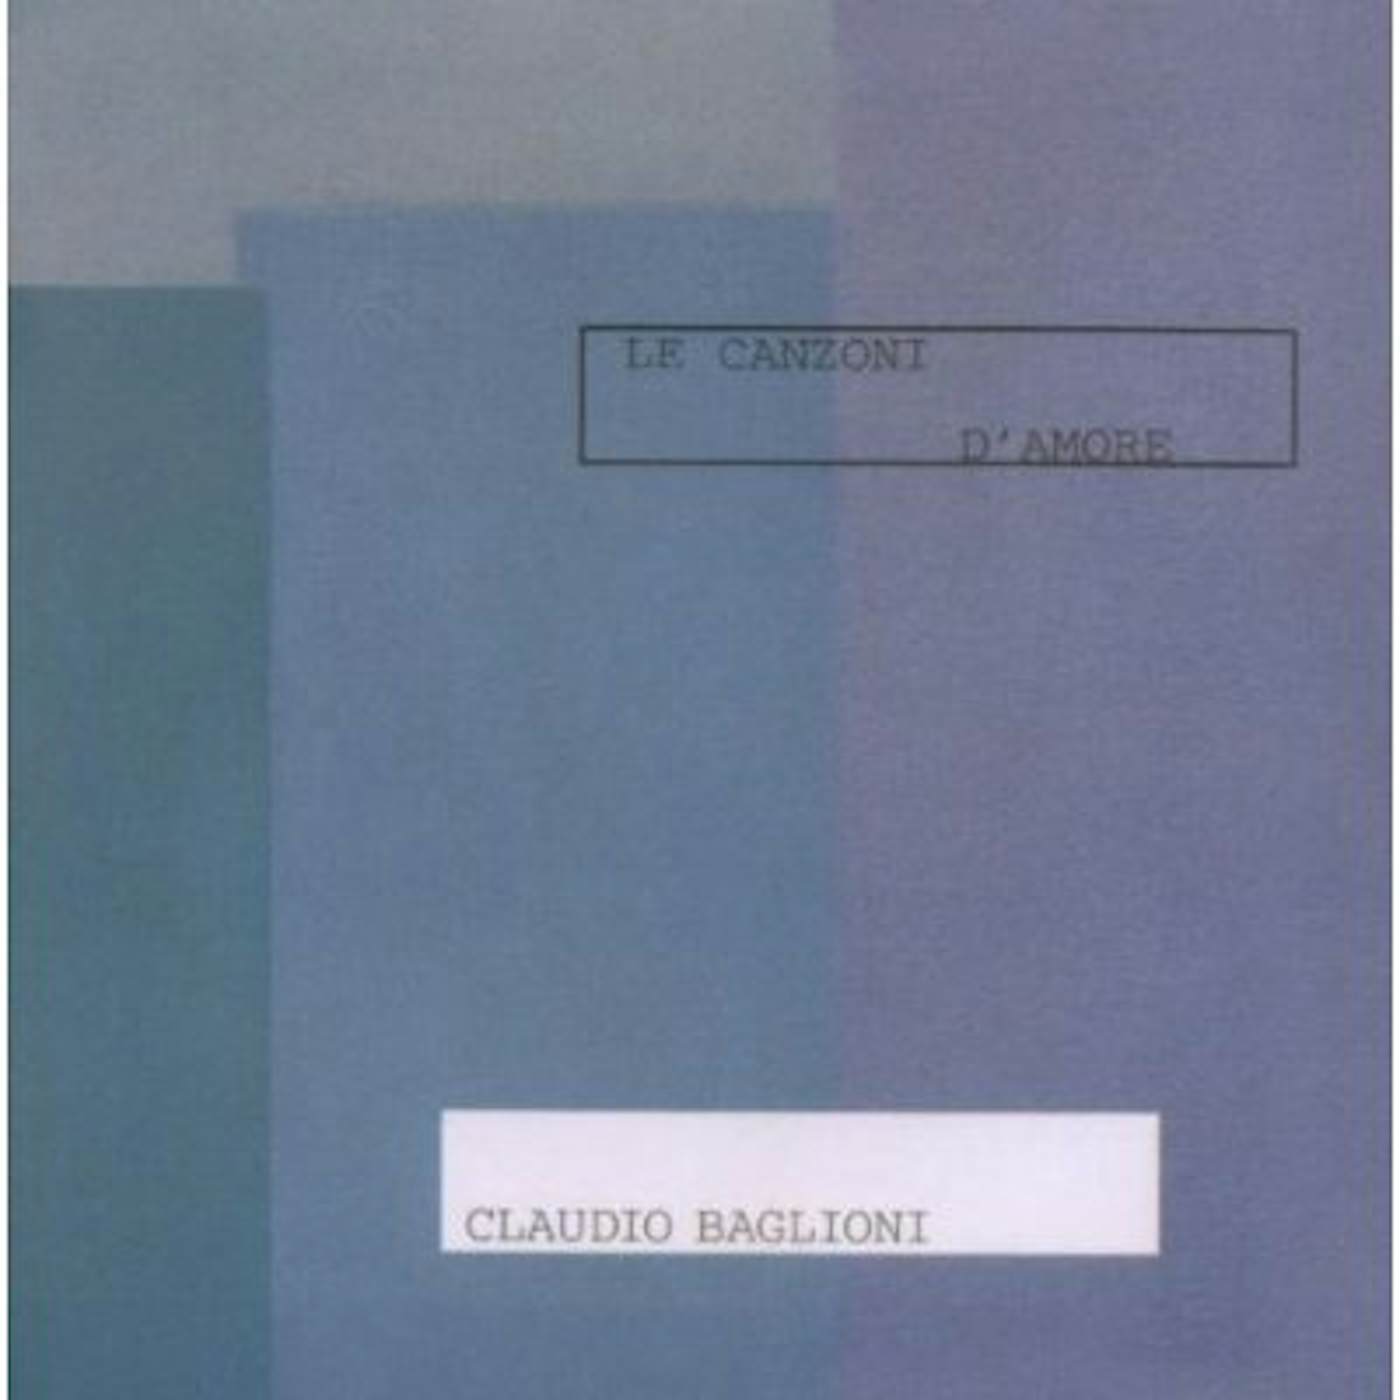 Claudio Baglioni LE CANZONI D'AMORE CD